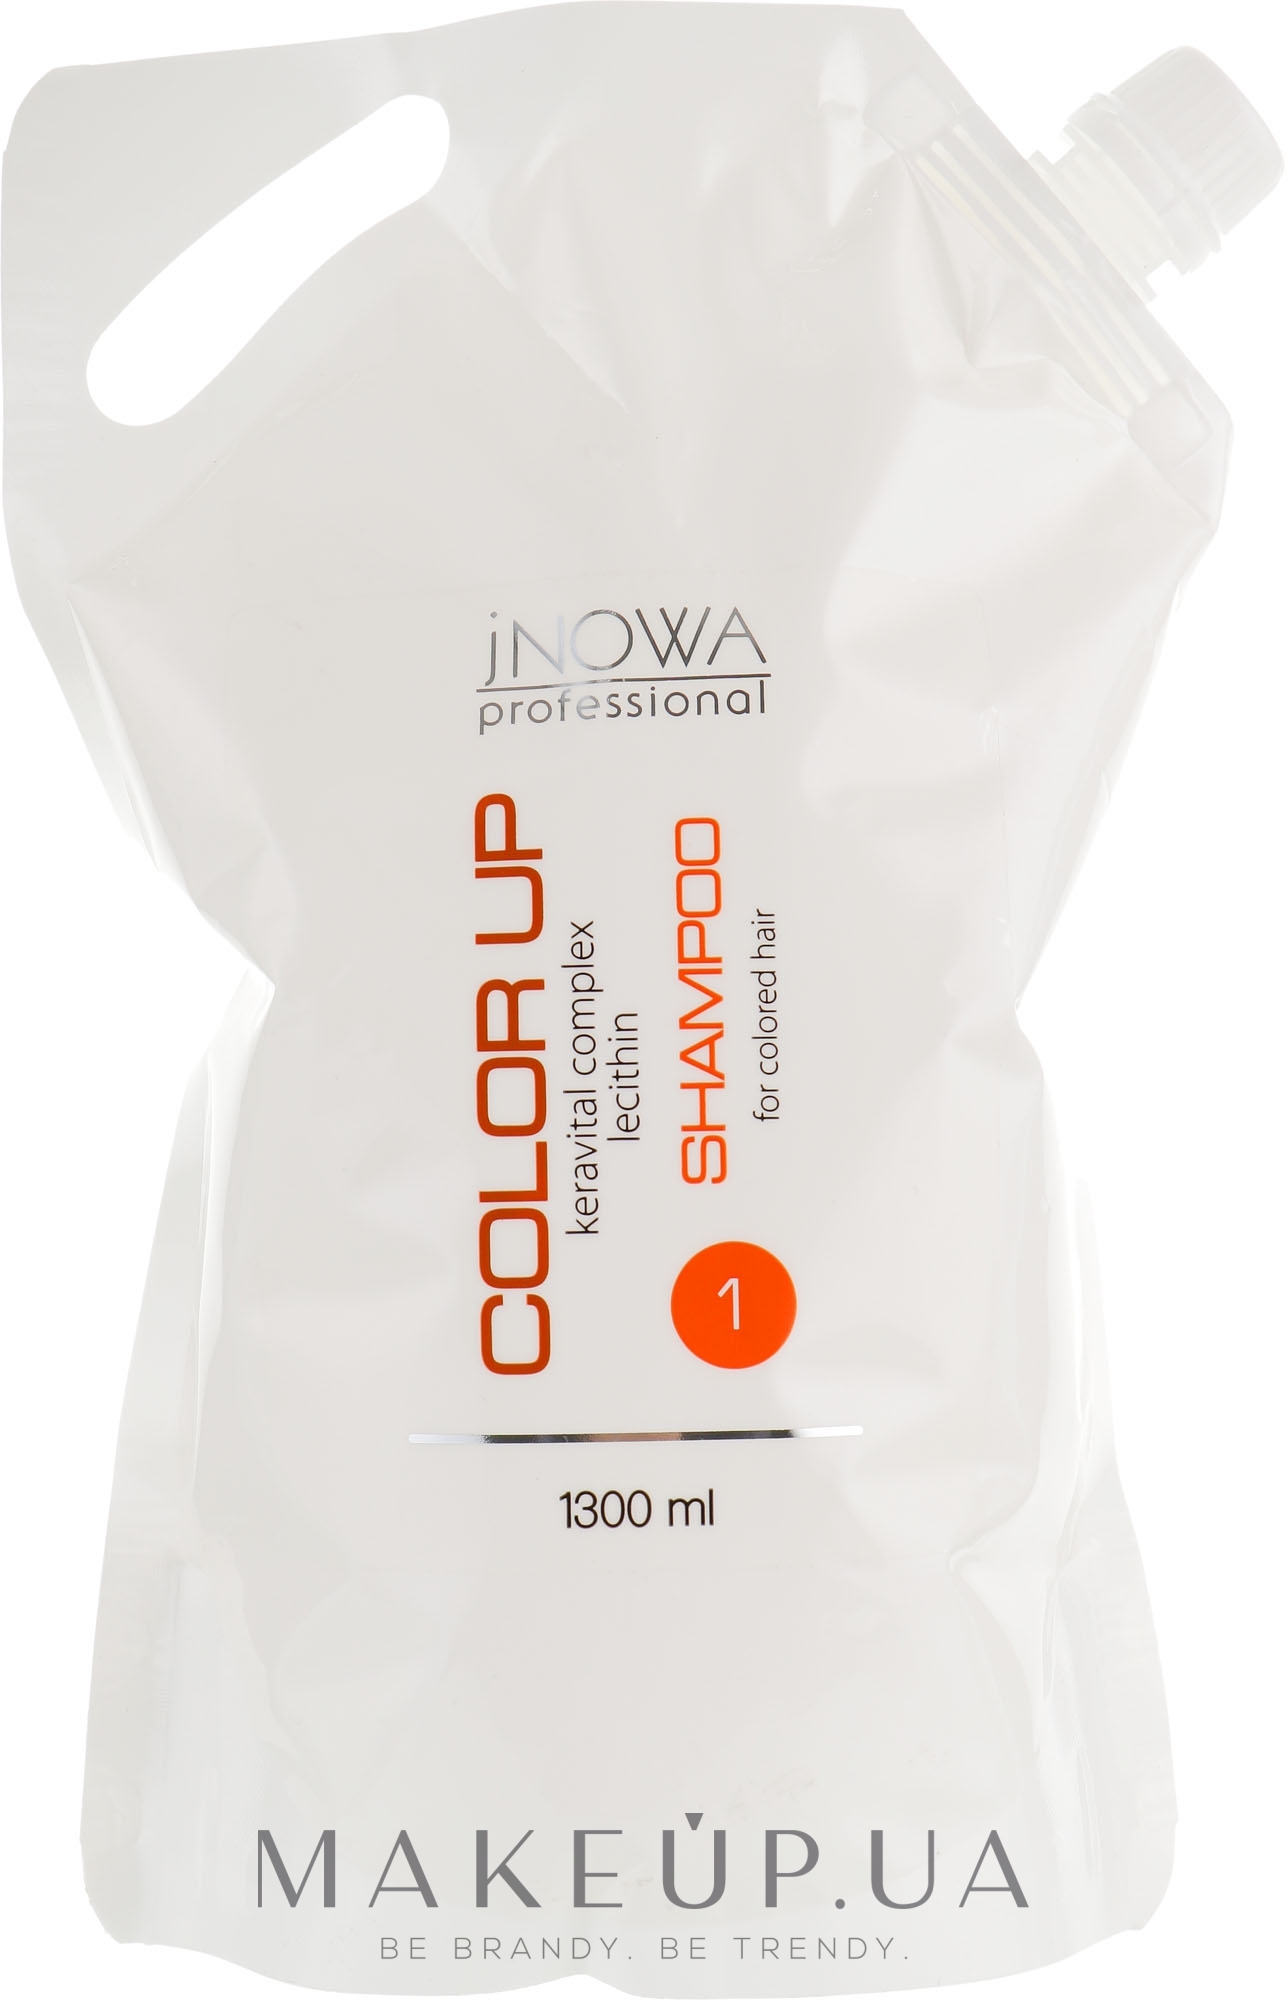 Шампунь професійний для стабілізації кольору після фарбування - jNOWA Professional Color Up Hair Shampoo (запасний блок) — фото 1300ml